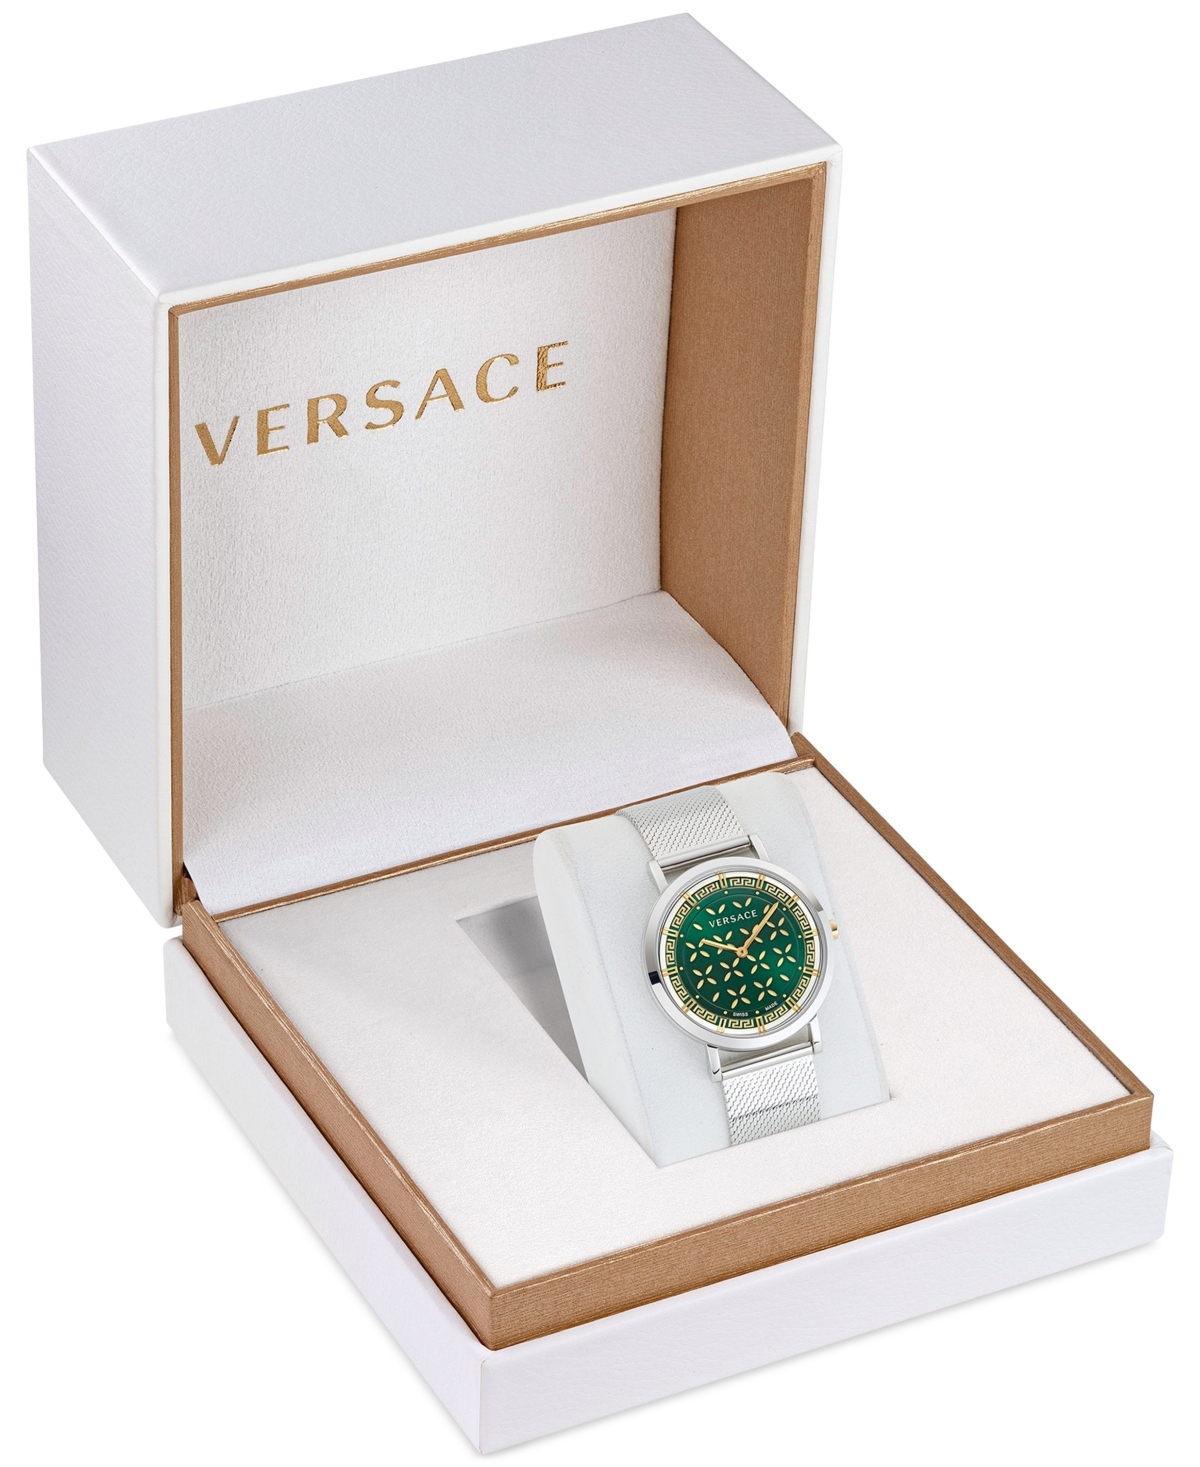 Shop Versace Women's Swiss New Generation Stainless Steel Mesh Bracelet Watch 36mm